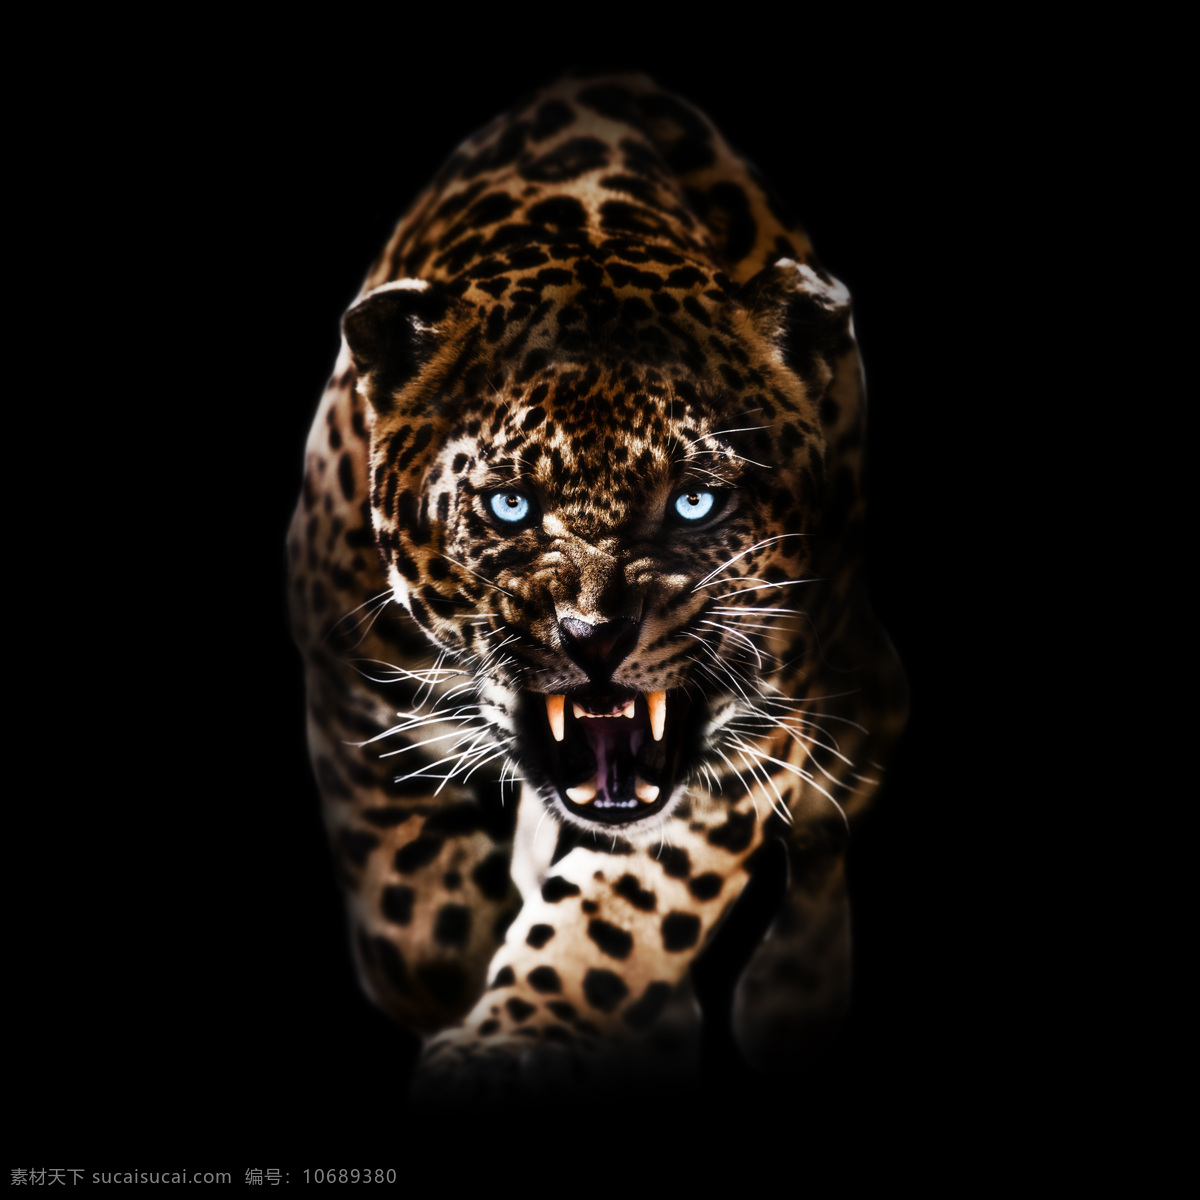 凶猛的豹子 凶猛 豹子 猎豹 野生动物 动物摄影 动物世界 陆地动物 生物世界 黑色